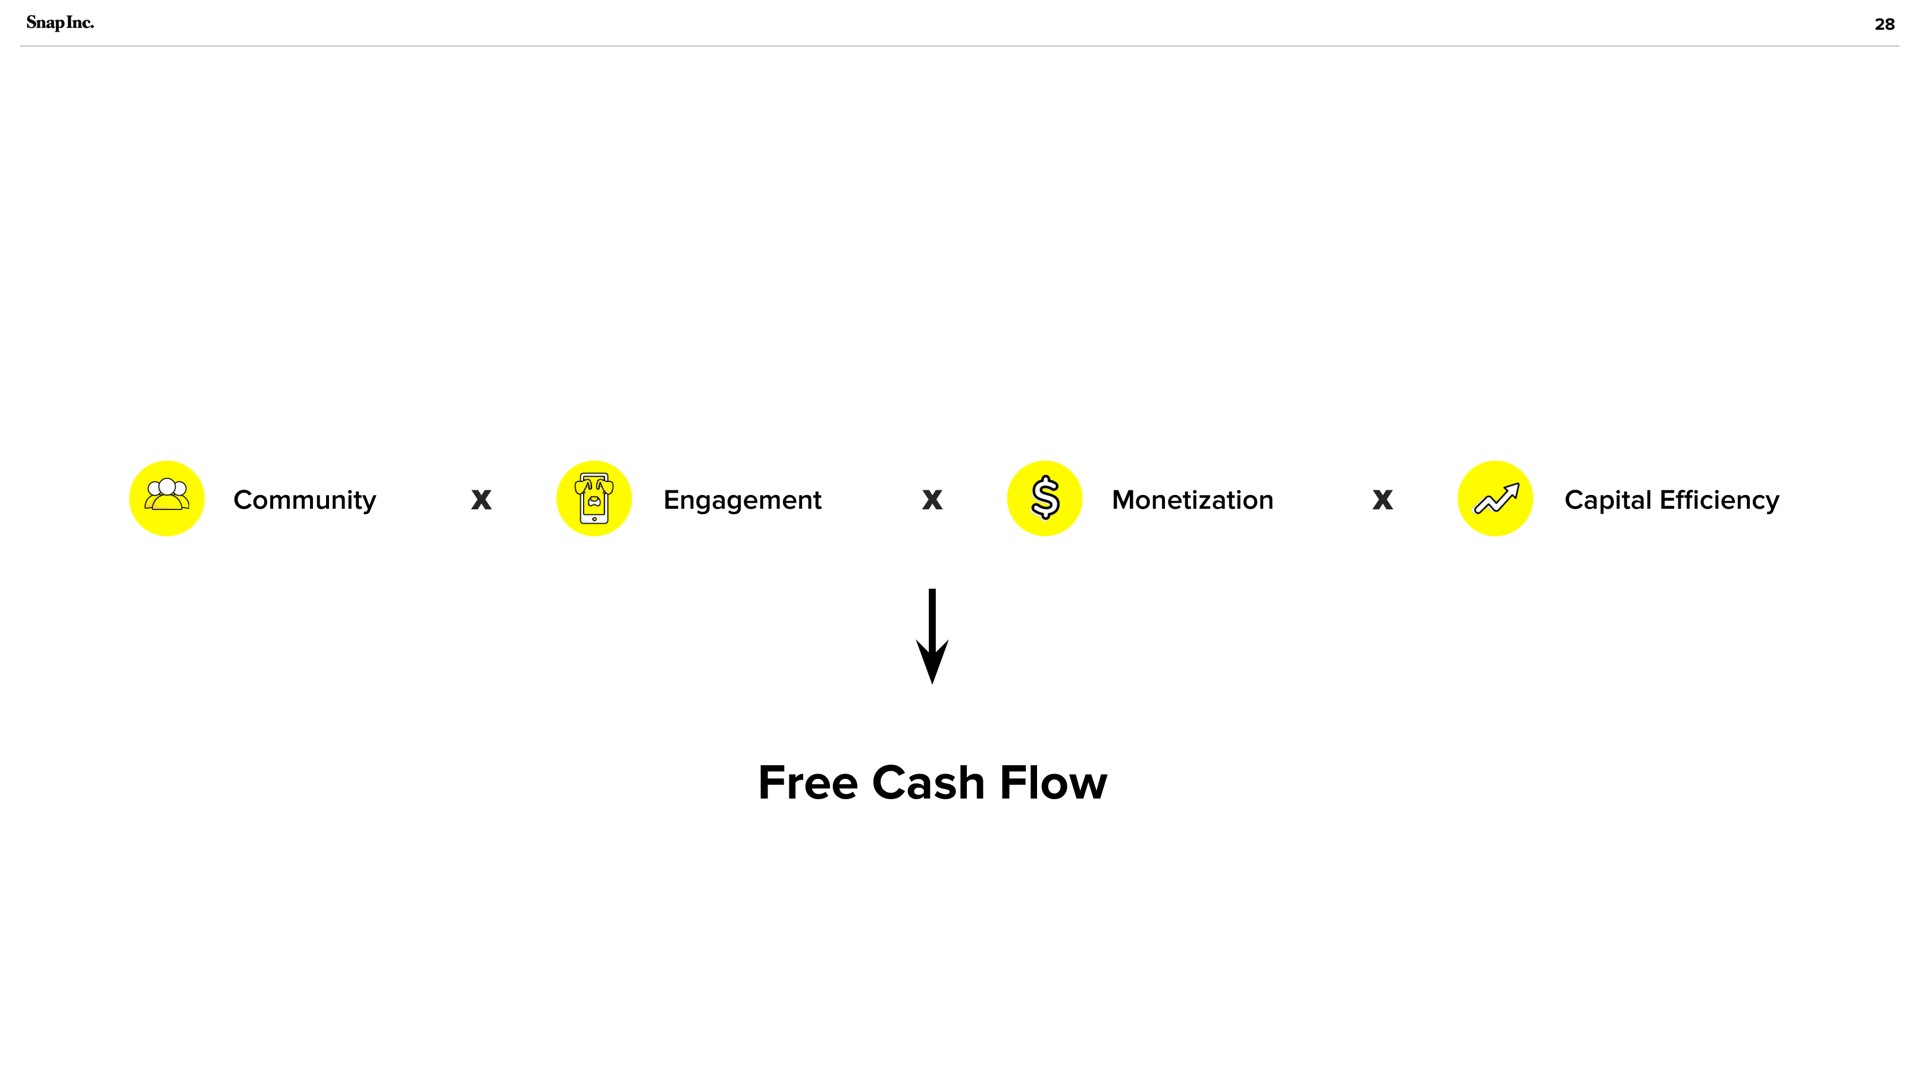 a free cash flow | Snap Inc